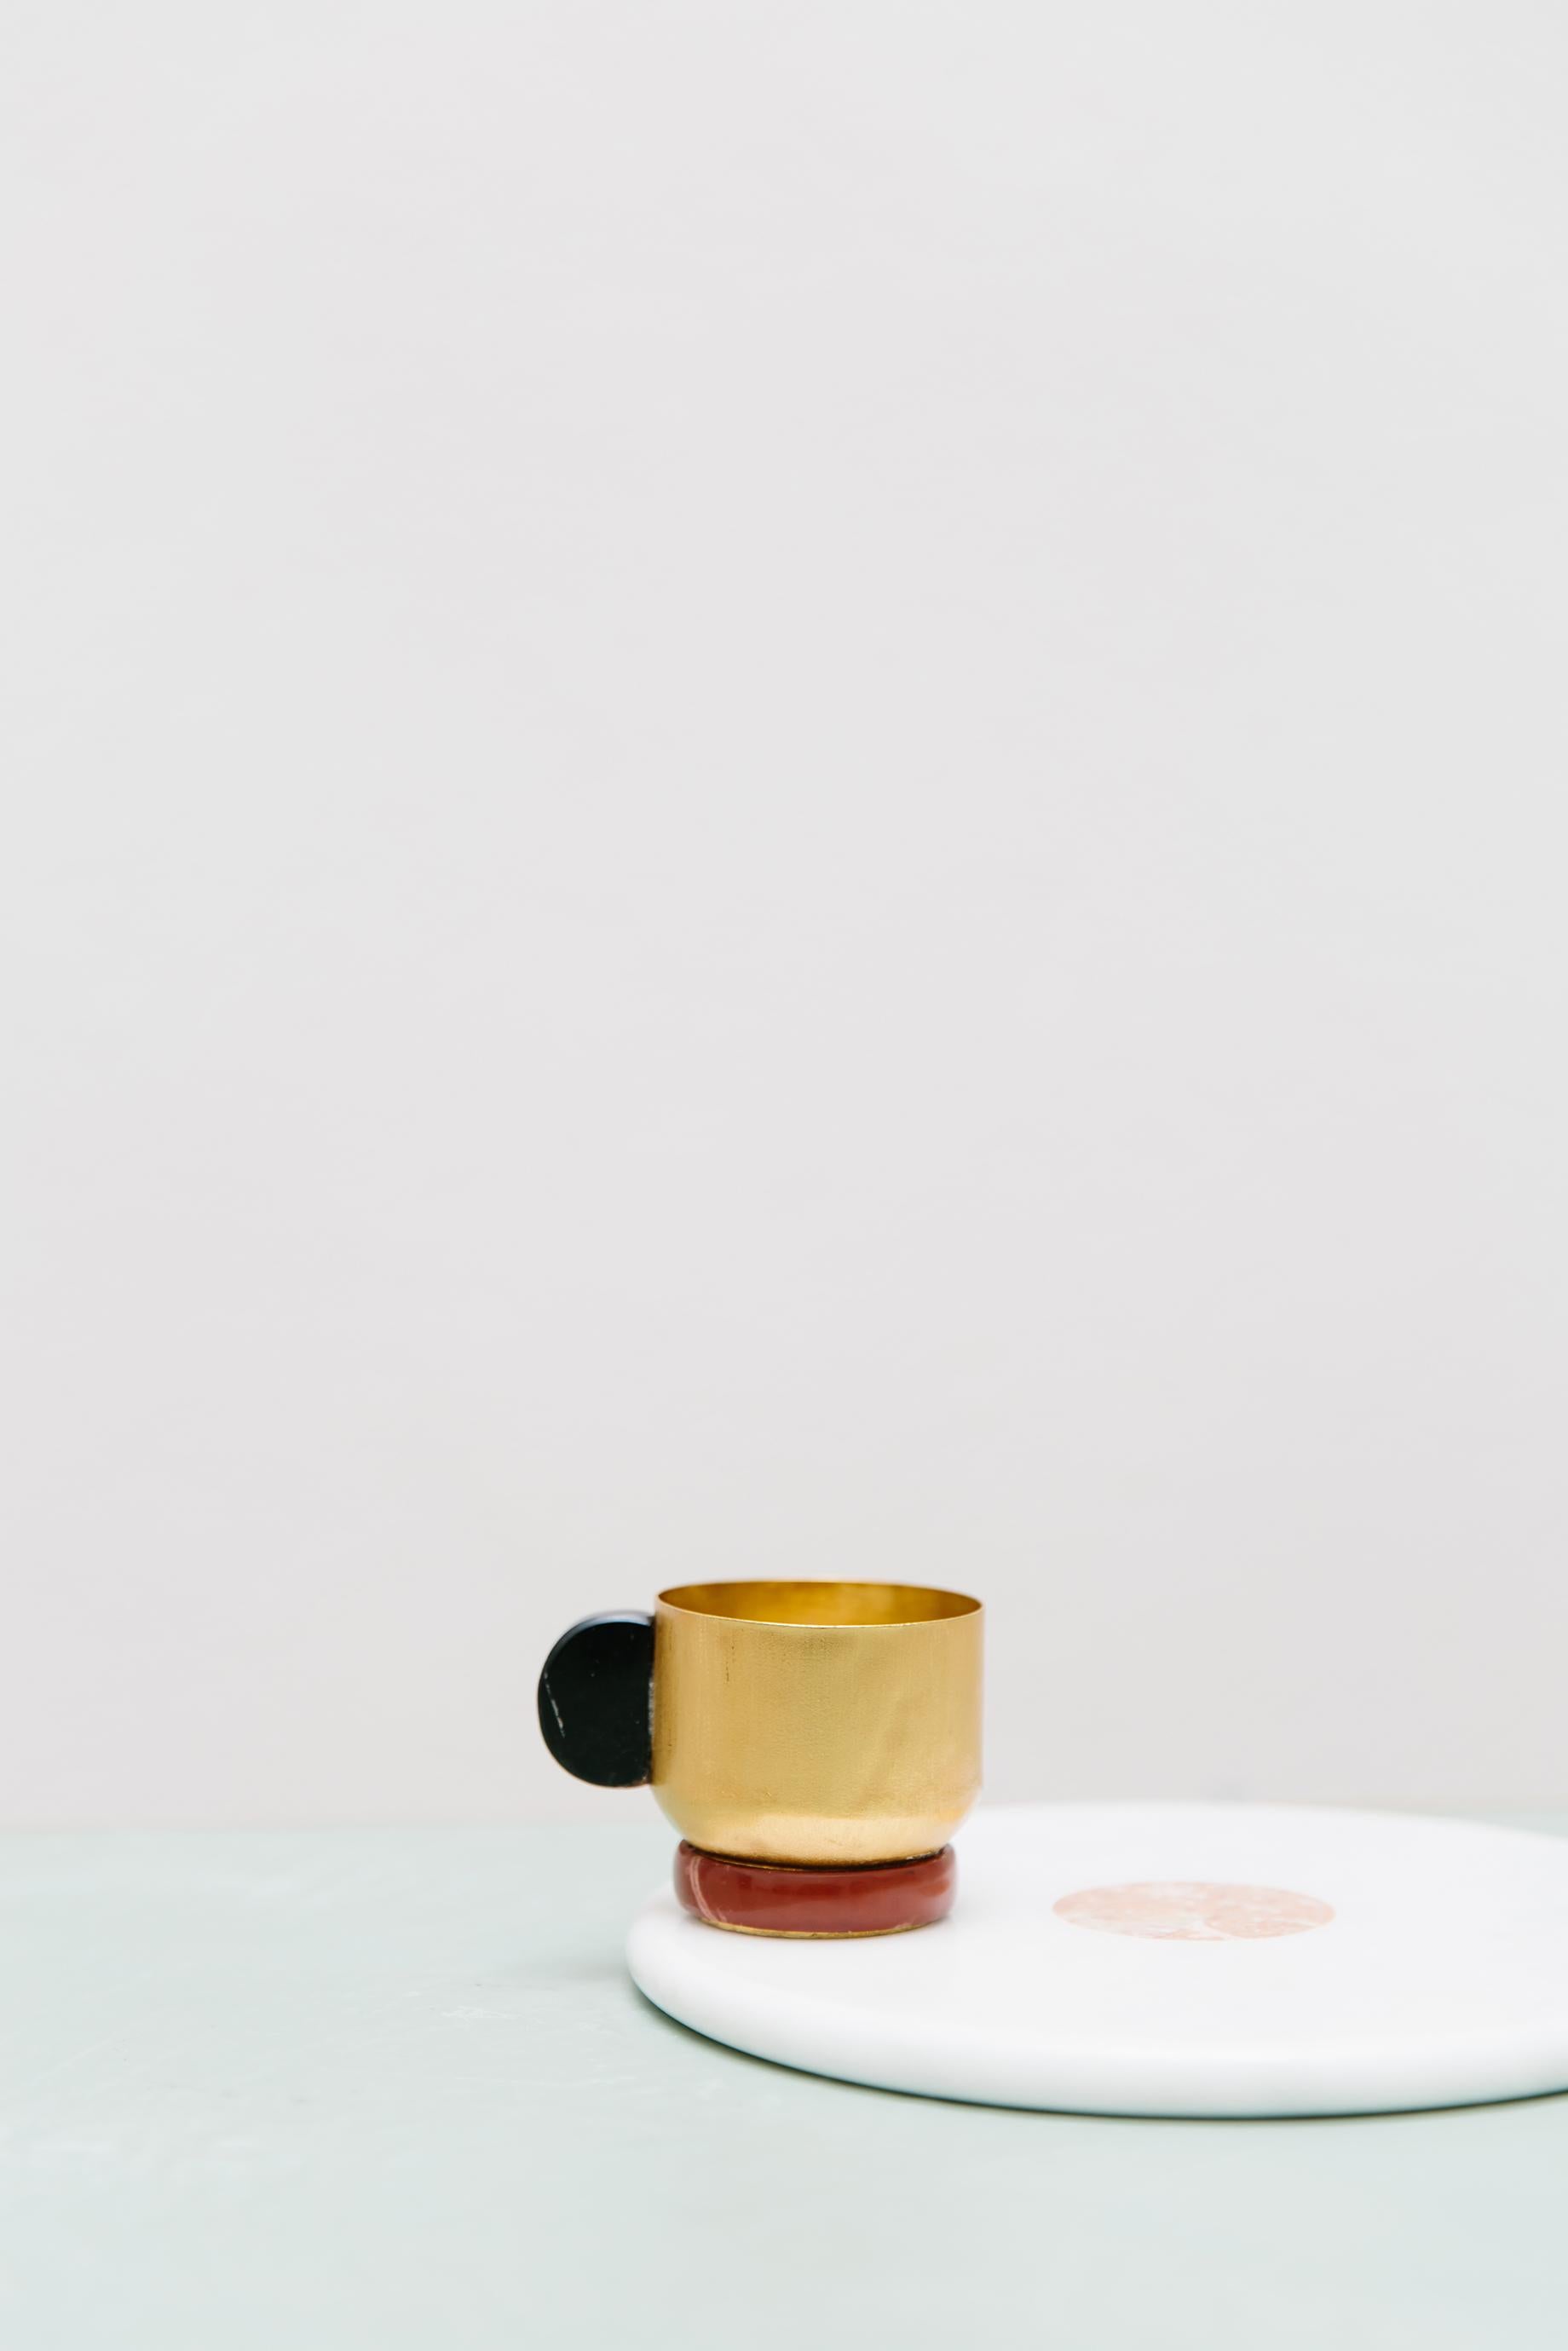 Werten Sie Ihr tägliches Tee- oder Kaffeeritual mit unserer exquisiten Onix-Tasse auf. Der Becher aus vergoldetem Messing wird in Italien mit Hilfe von Blechdrehtechniken handgefertigt. Der mit einem Onix-Stein verzierte Griff verleiht Ihrem